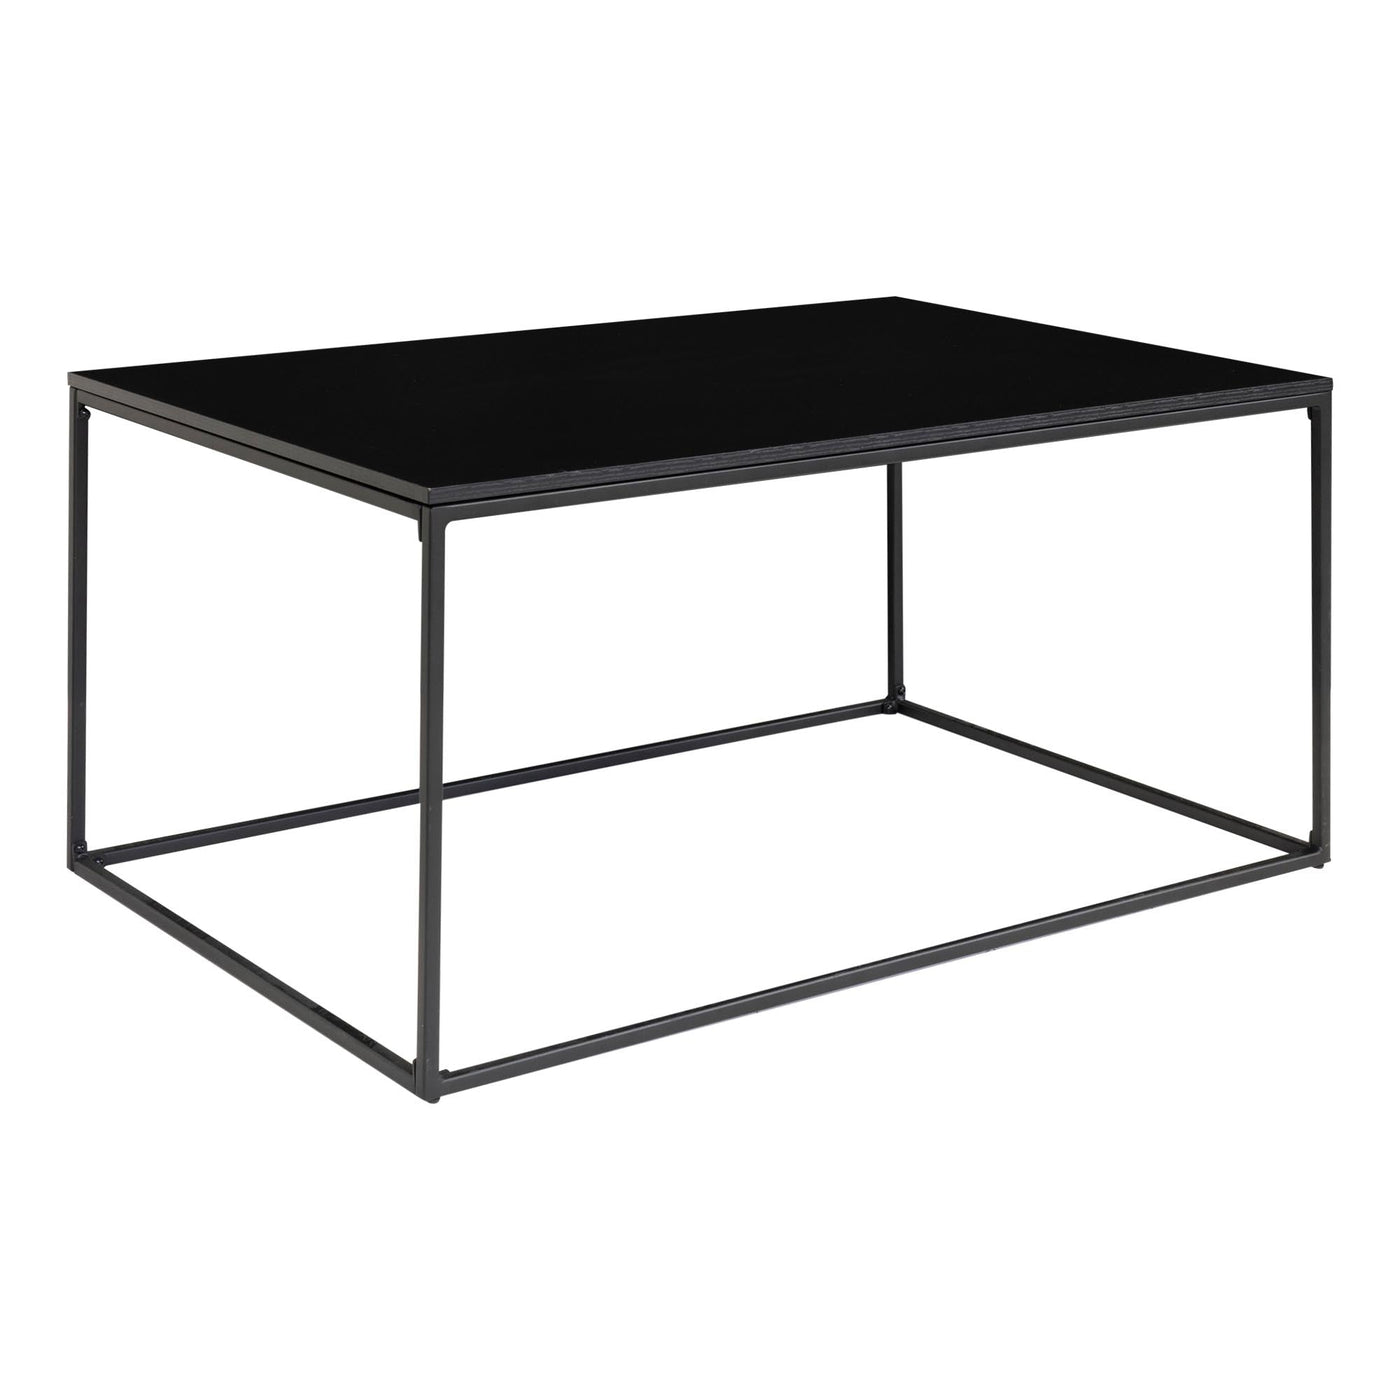 Vita sohvapöytä 60x90 cm, musta - Mööpeli.com